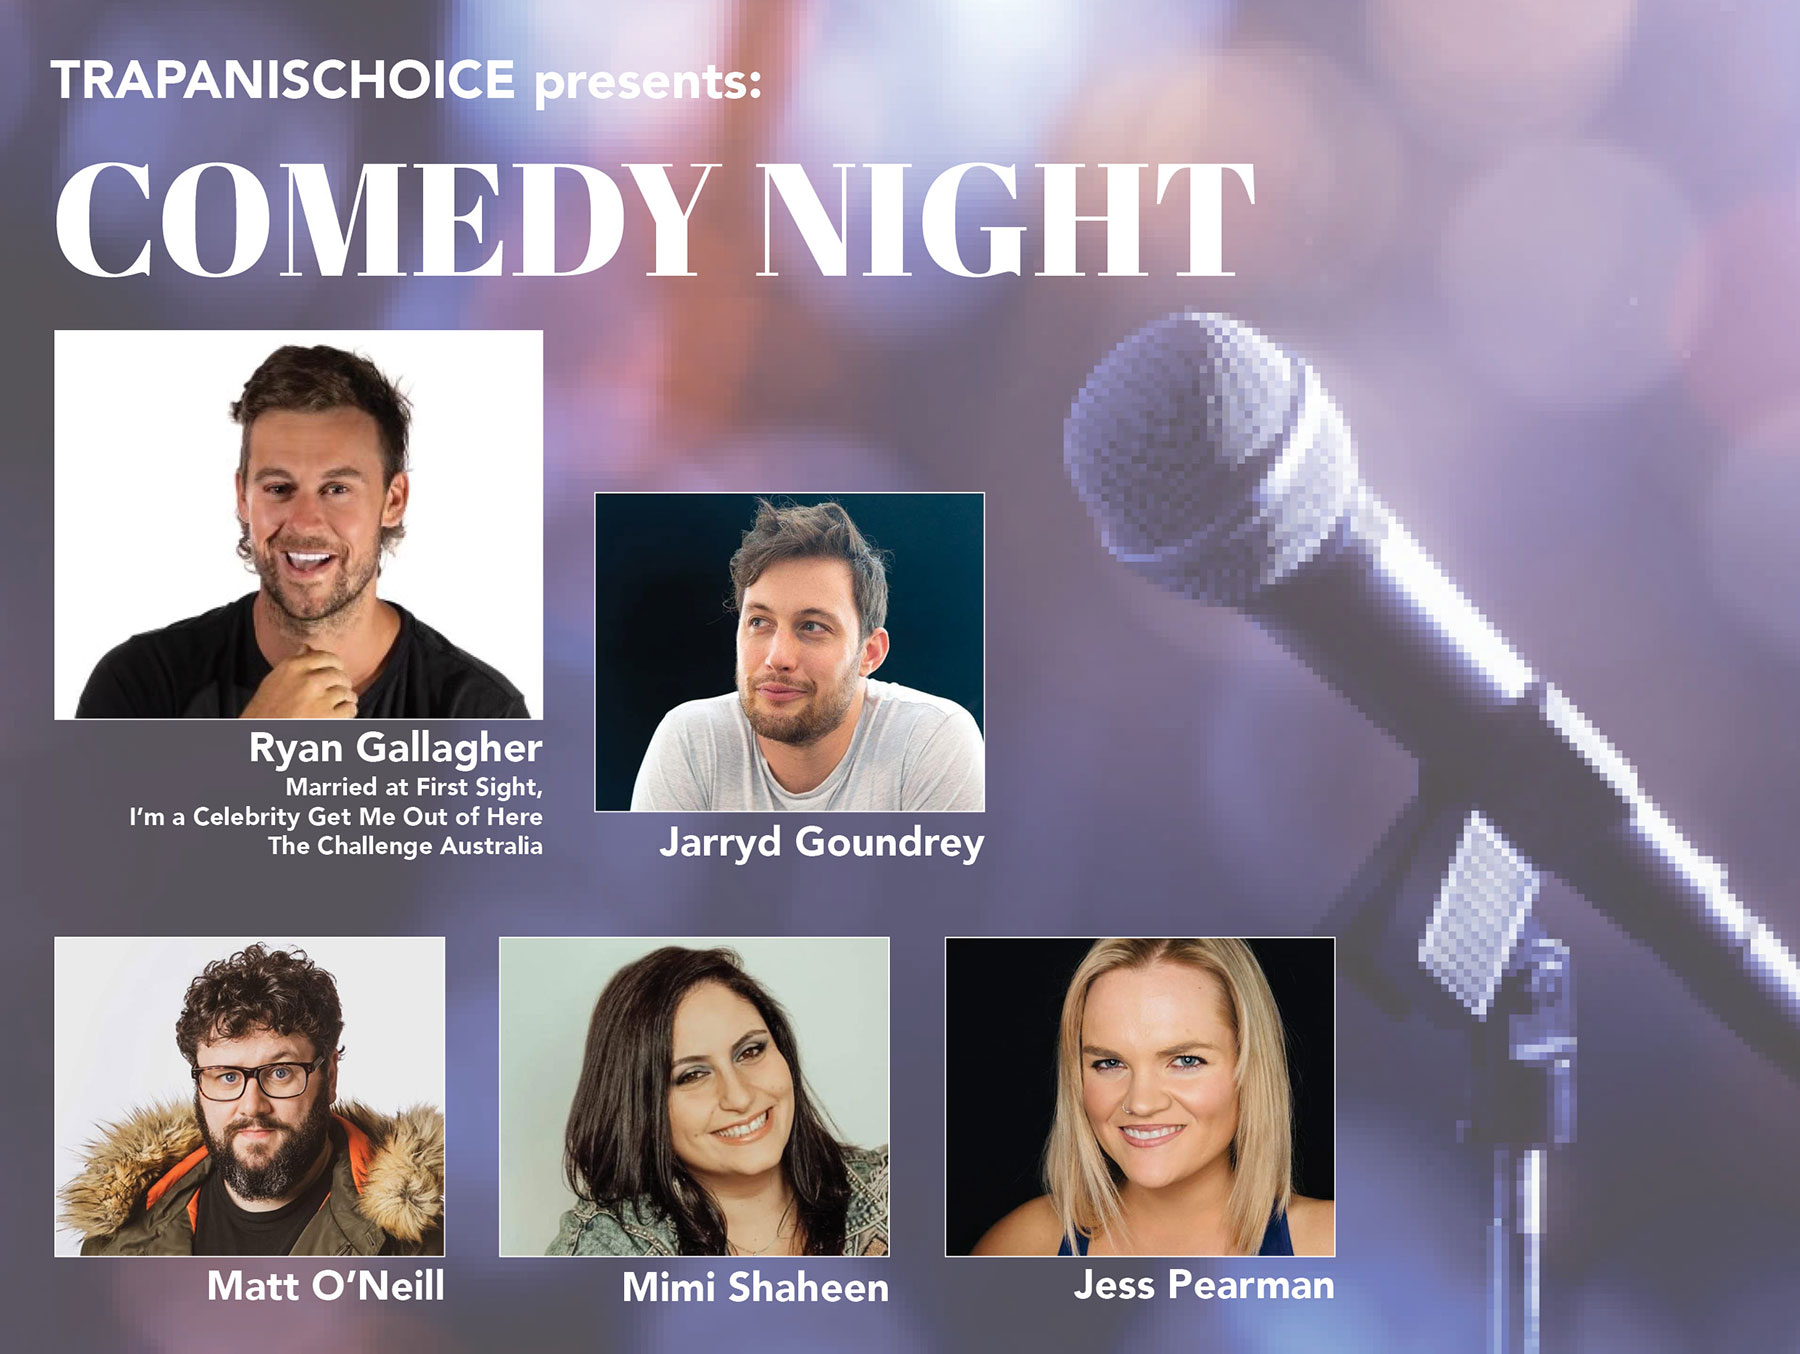 Comedy Night at Maxines Event banner, Ryan Gallagher, Jarryd Goundrey, Matt O’Neill, Mimi Shaheen, Jess Pearman